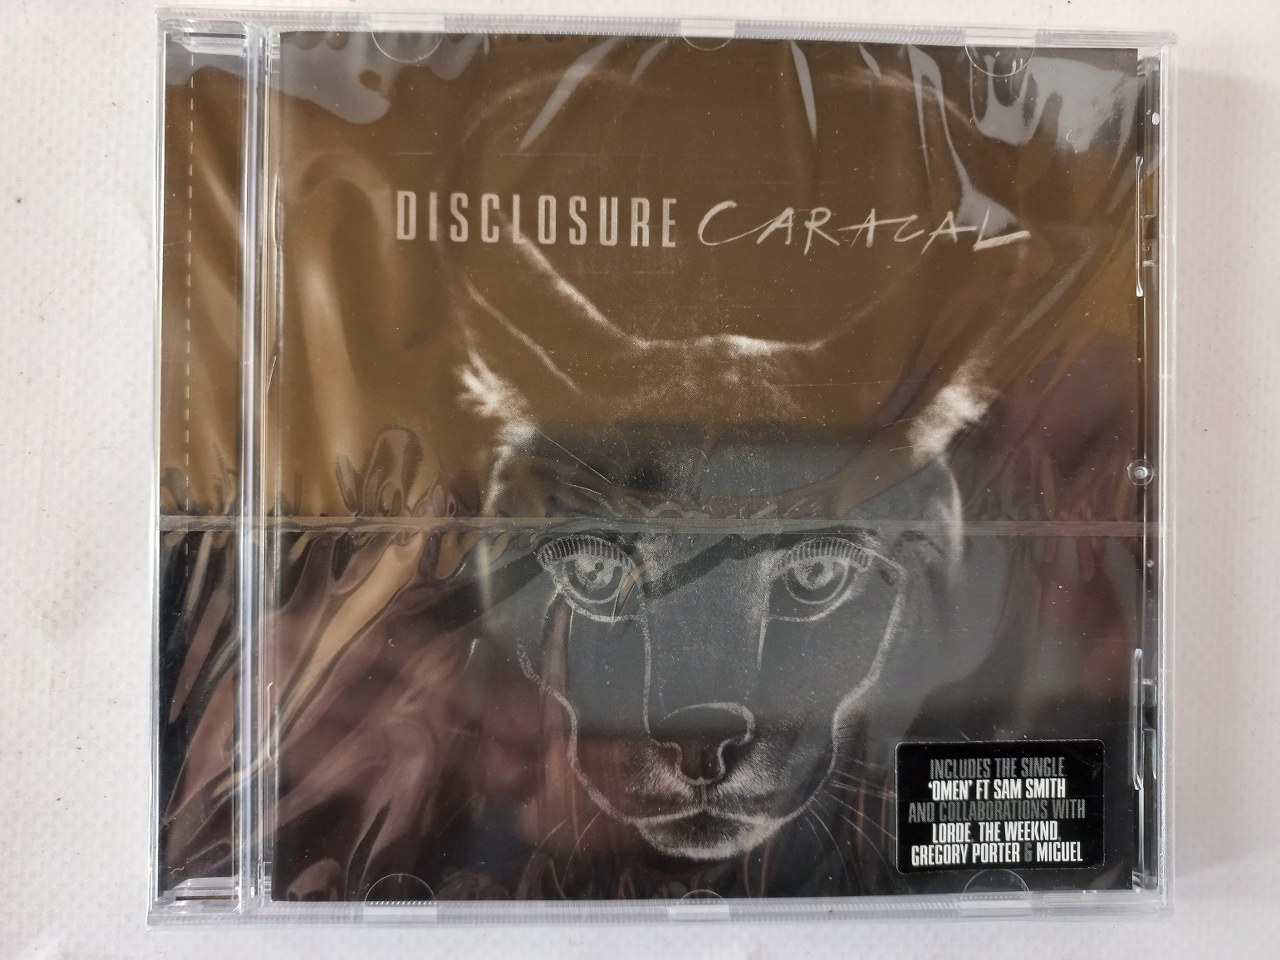 0602547441720 Disclosure - Caracal CD EU 2015